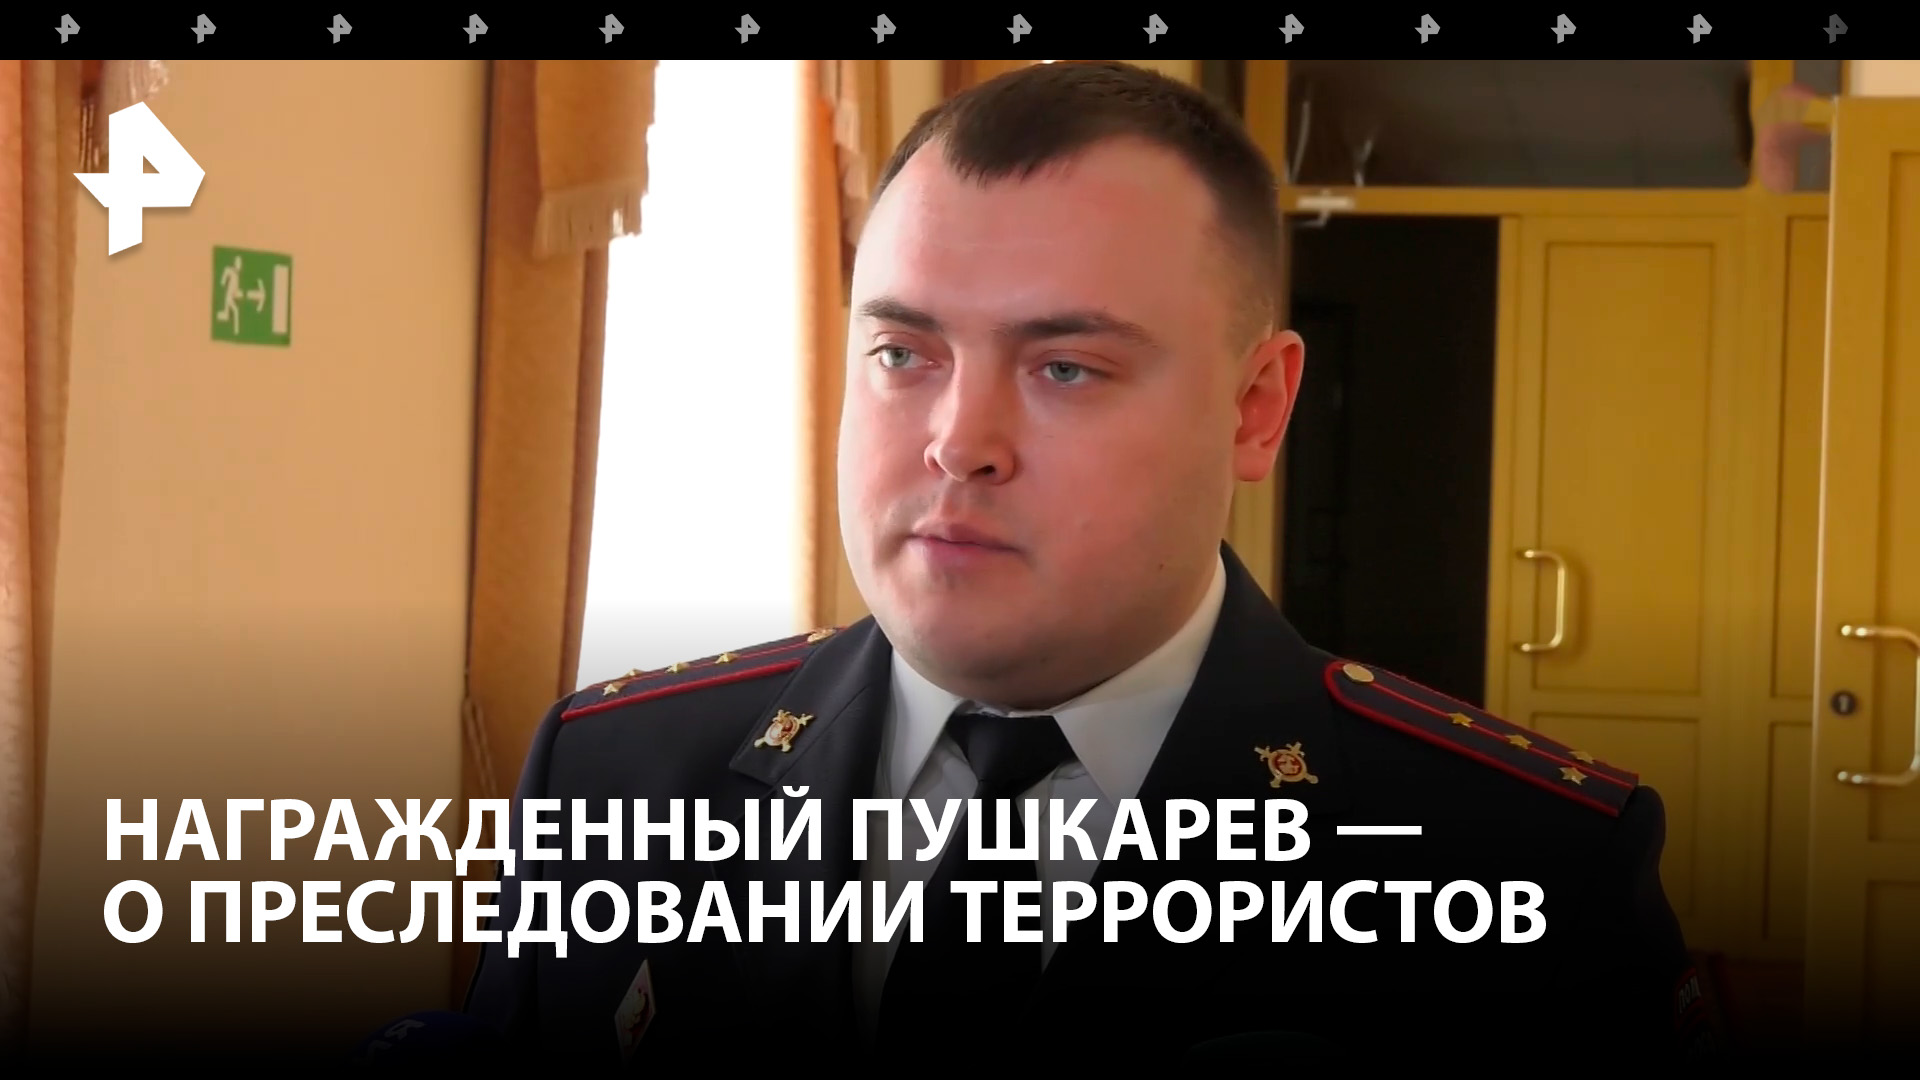 Никита Пушкарев, награжденный за поимку террористов, рассказал о преследовании преступников